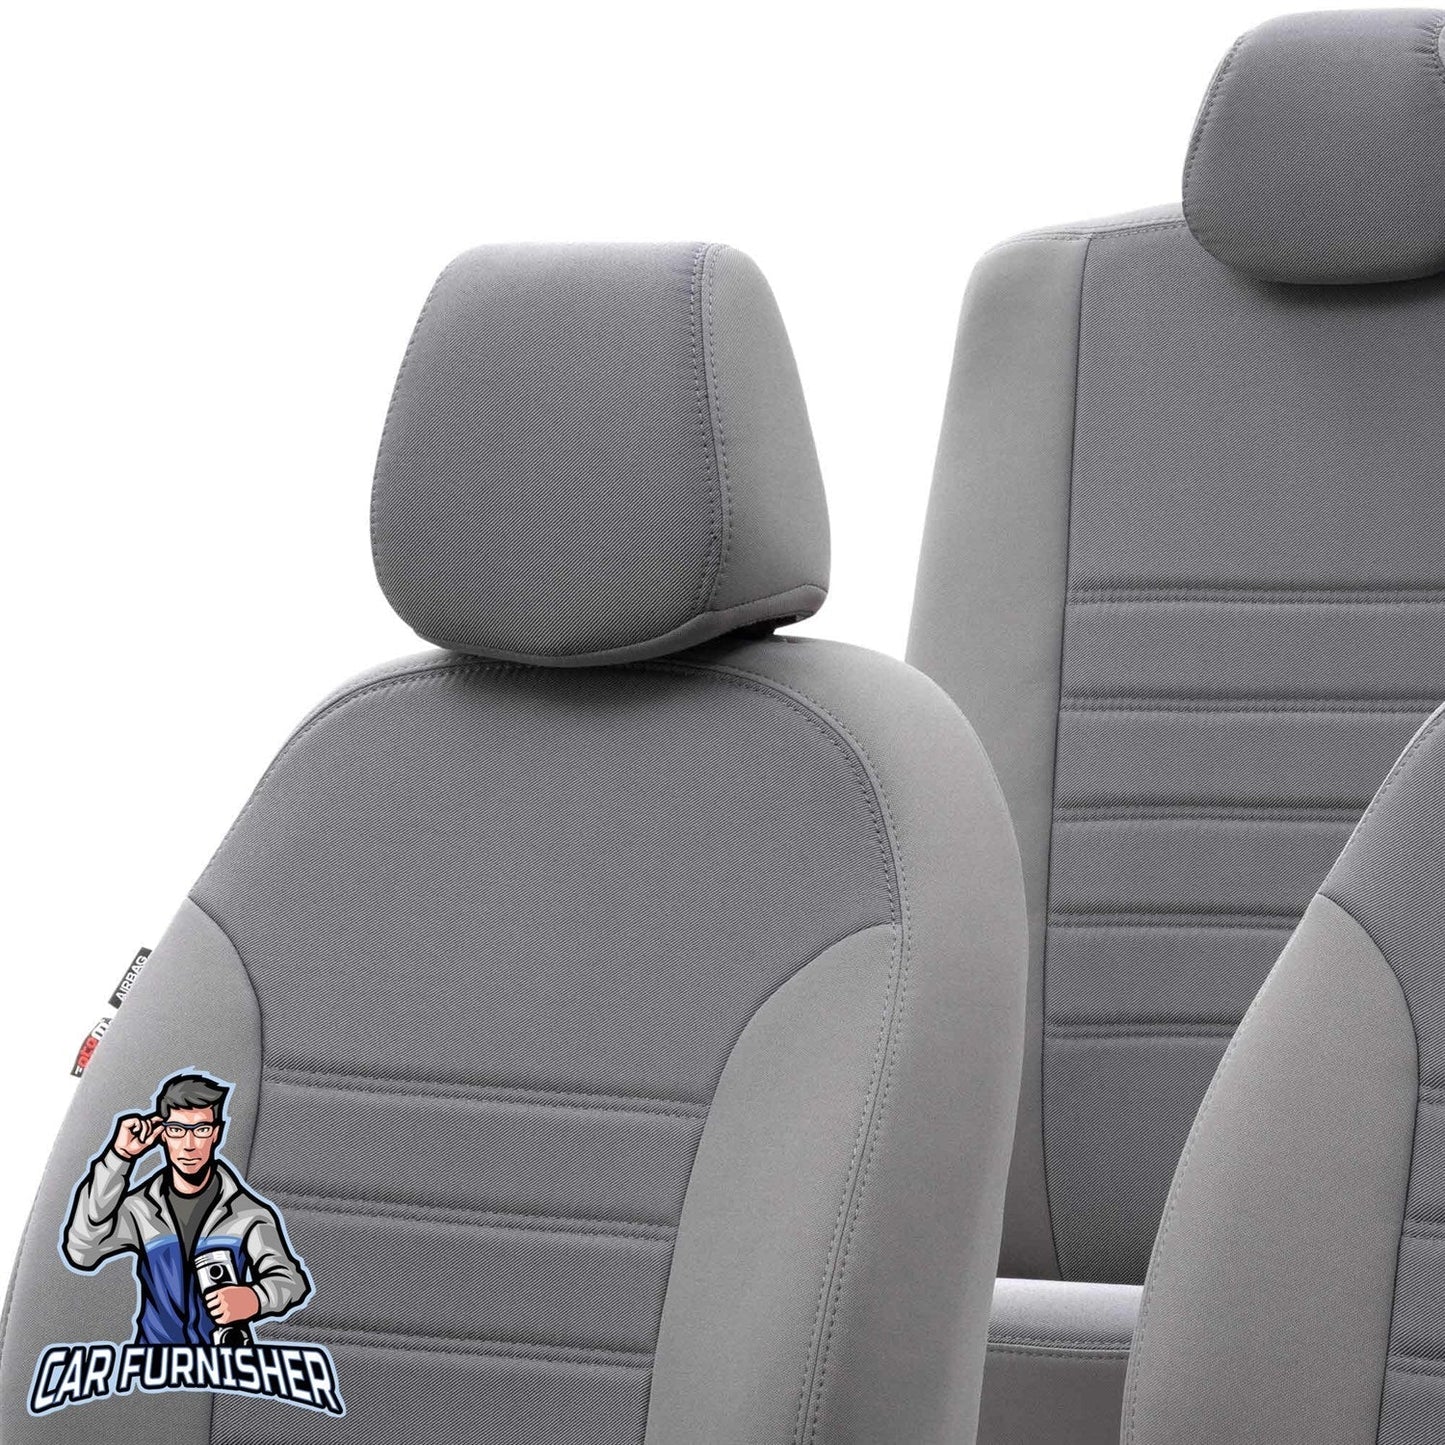 Suzuki Jimny Seat Covers Original Jacquard Design Gray Jacquard Fabric